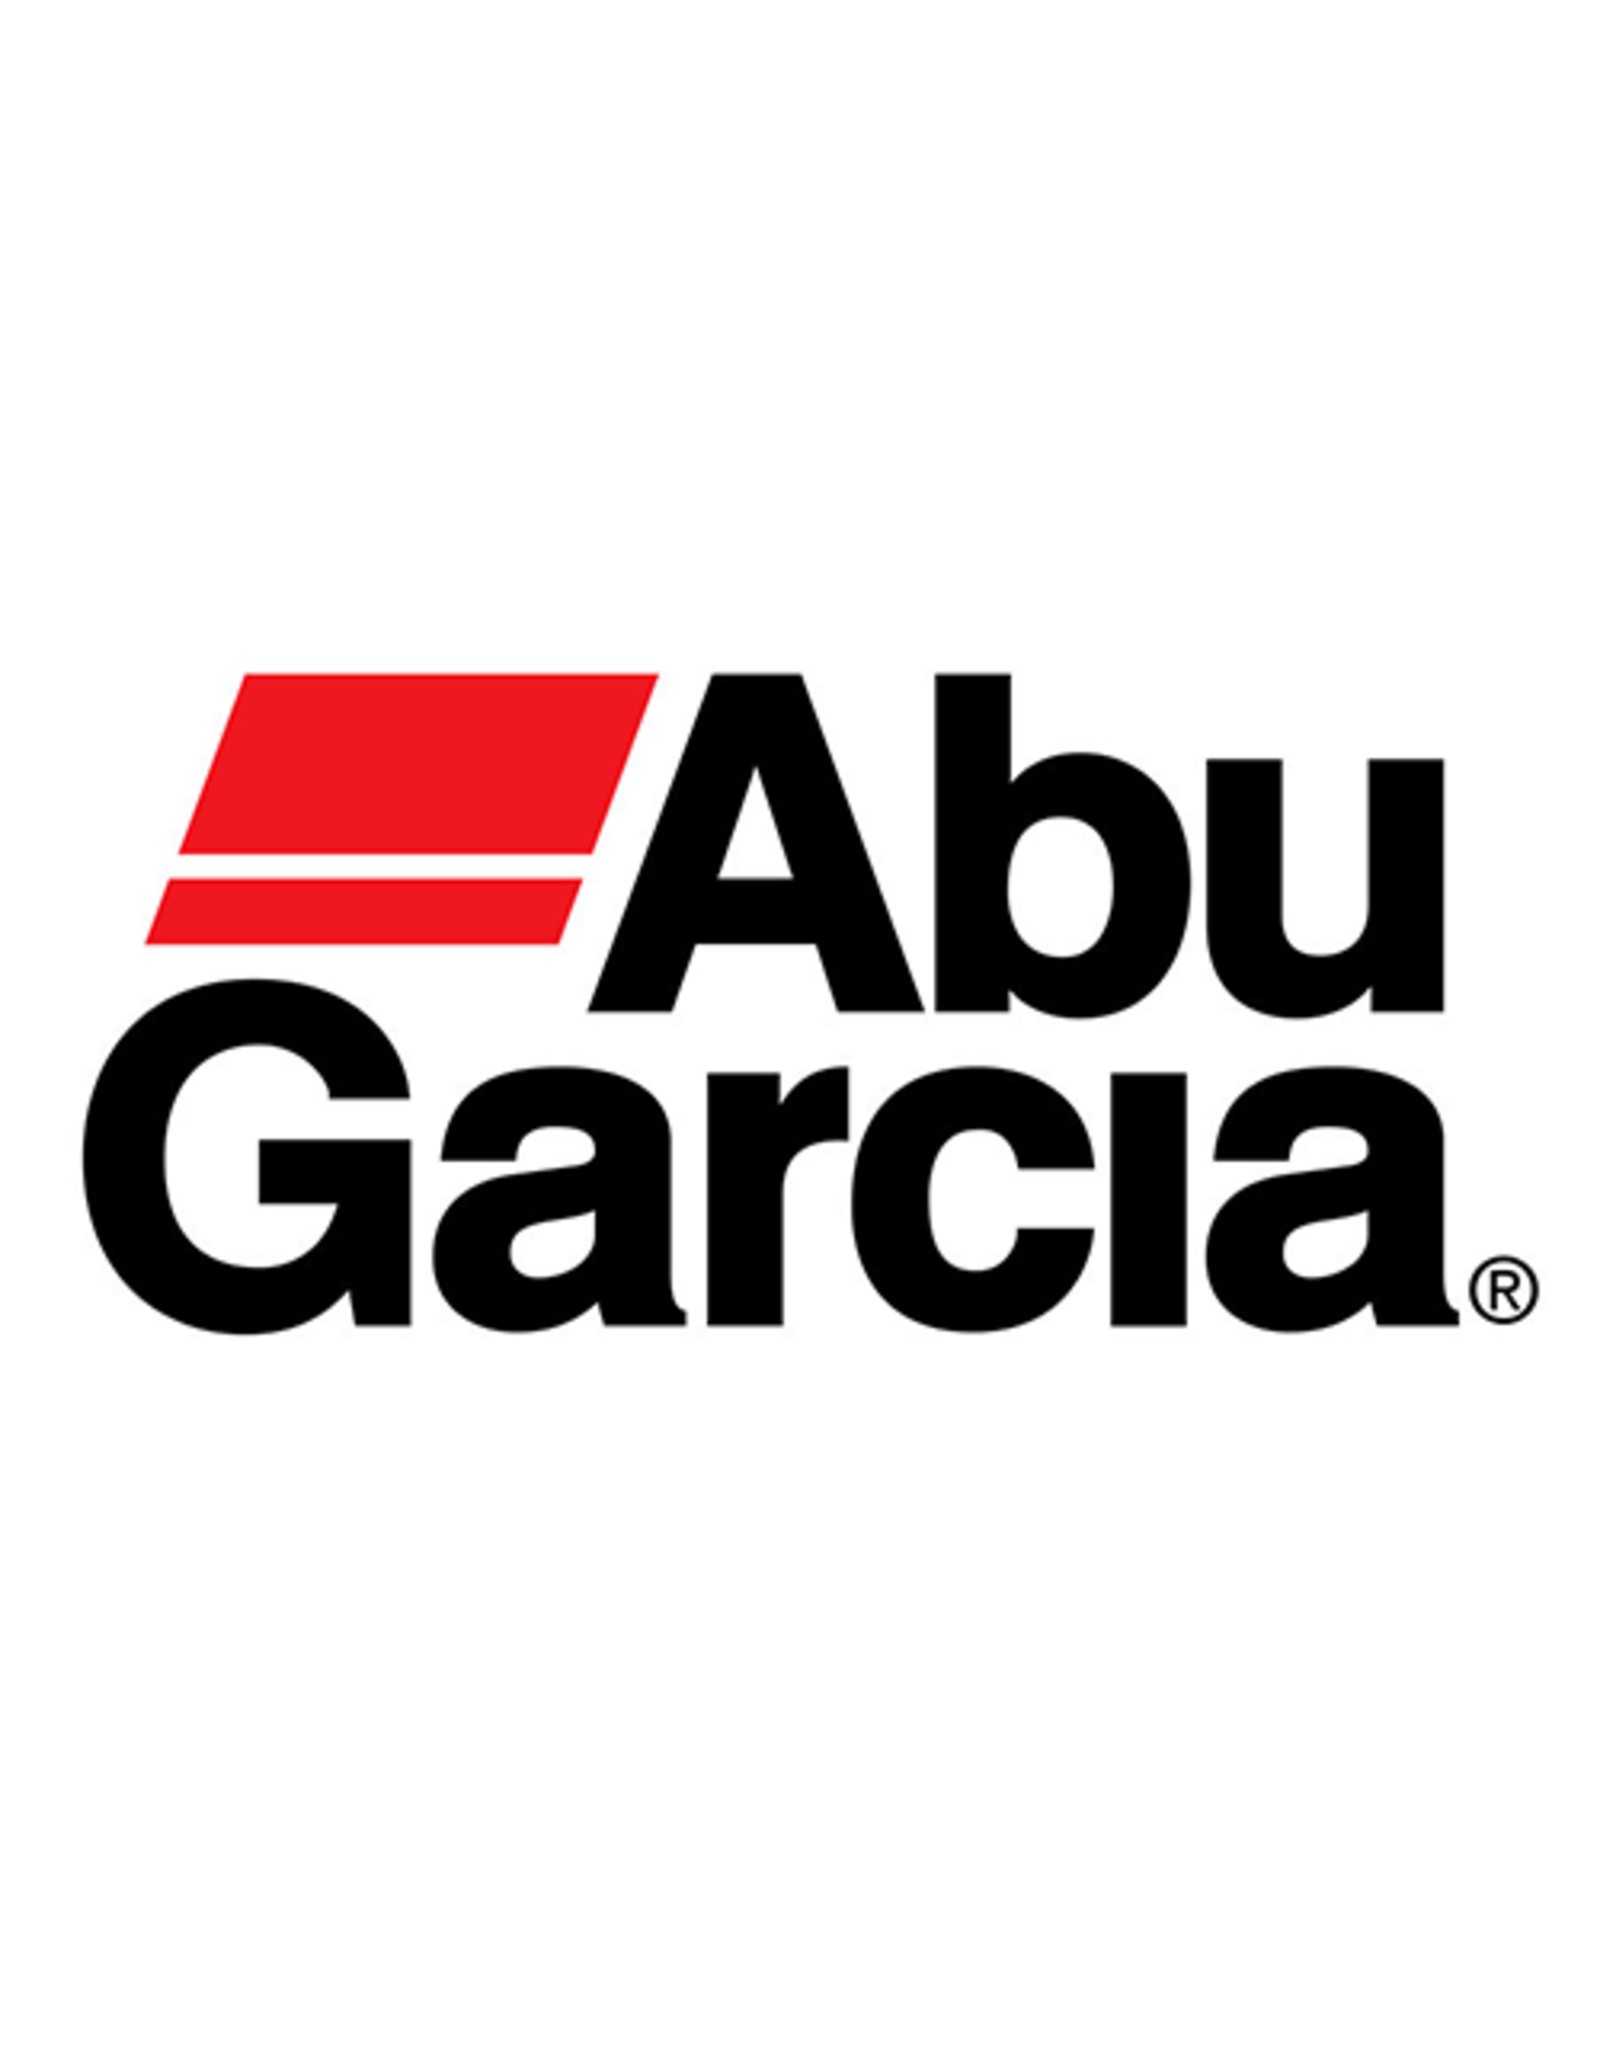 Abu Garcia 20500  PINION